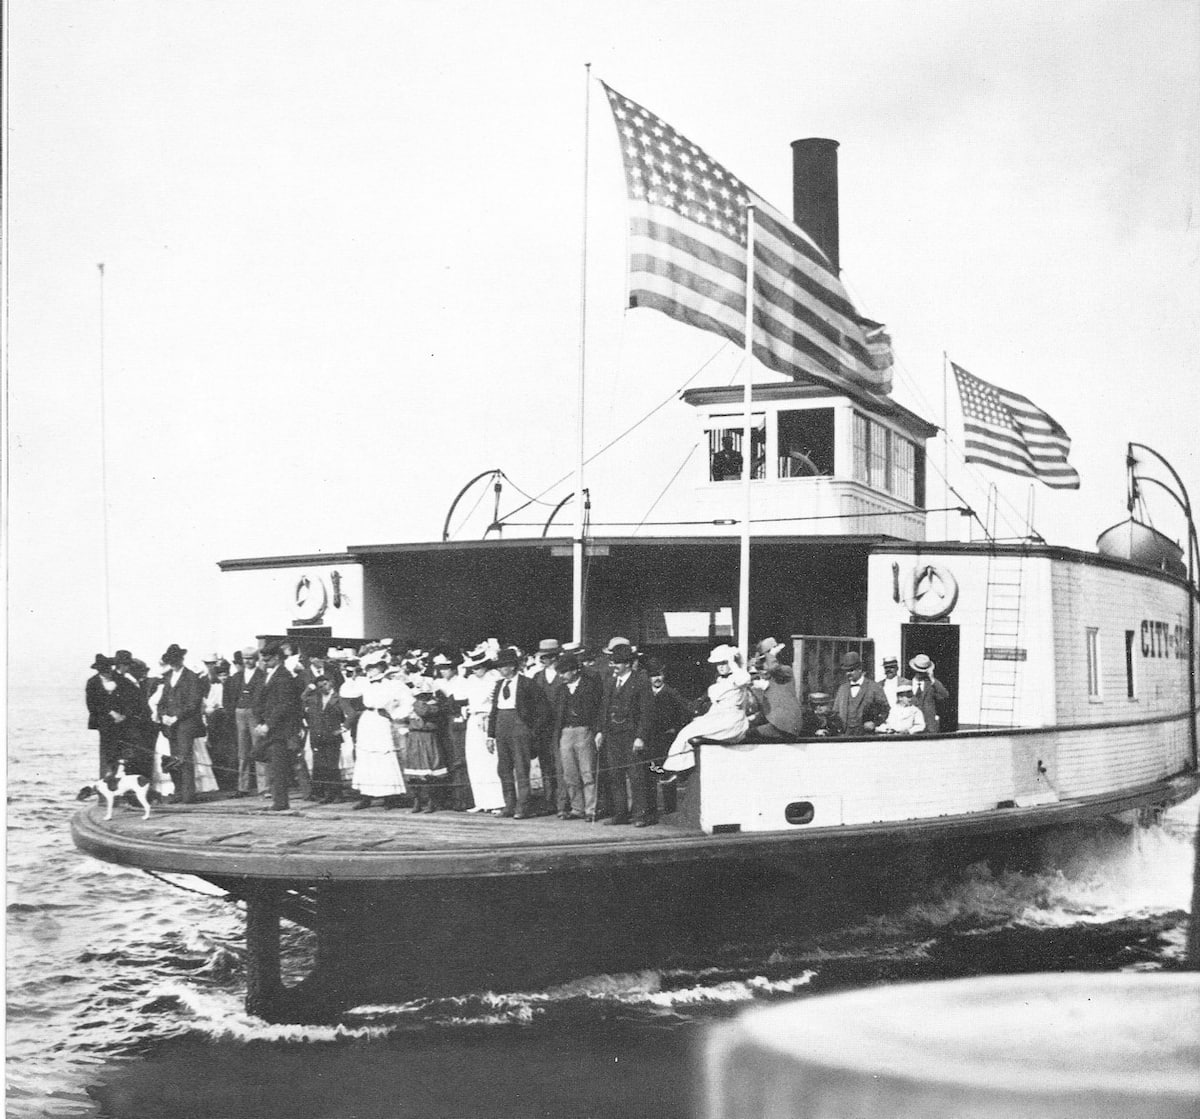 Fotografía en blanco y negro del viaje inaugural del Yellow Ferry en 1888